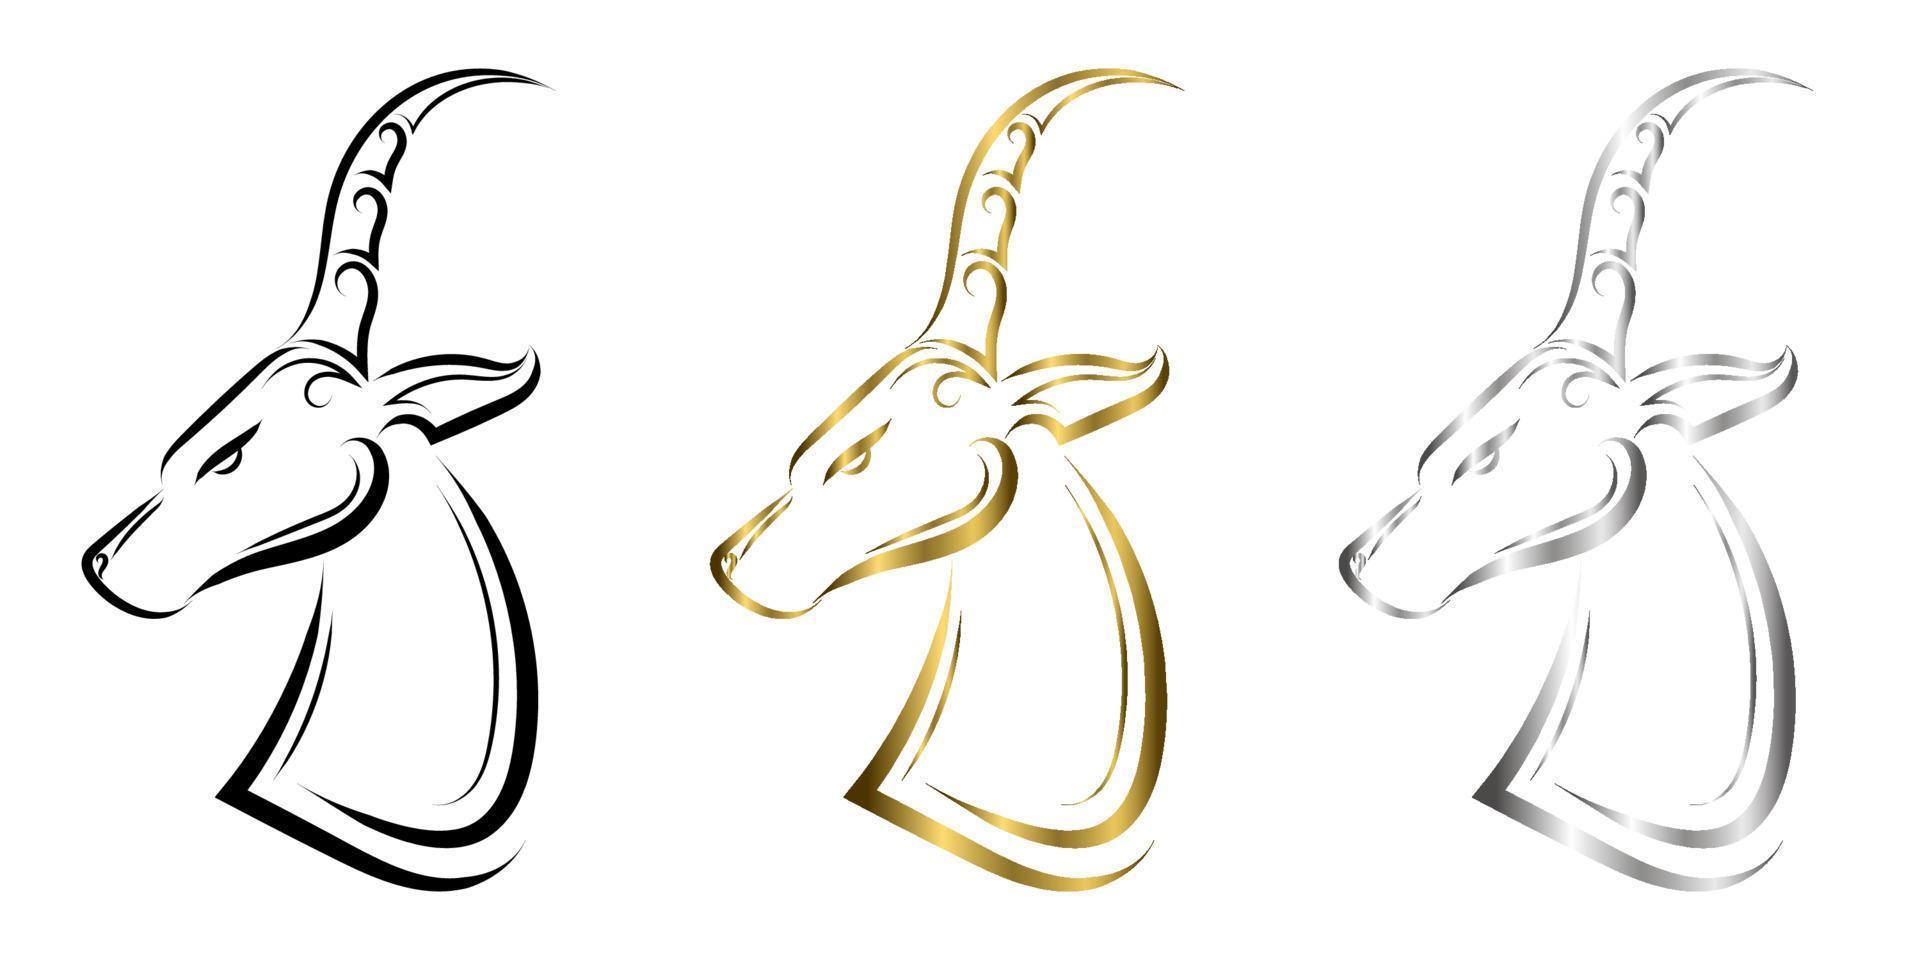 três cores de ouro preto e arte de linha de prata da cabeça do impala. bom uso de símbolo, mascote, ícone, avatar, tatuagem, design de camiseta, logotipo ou qualquer design que você quiser. vetor